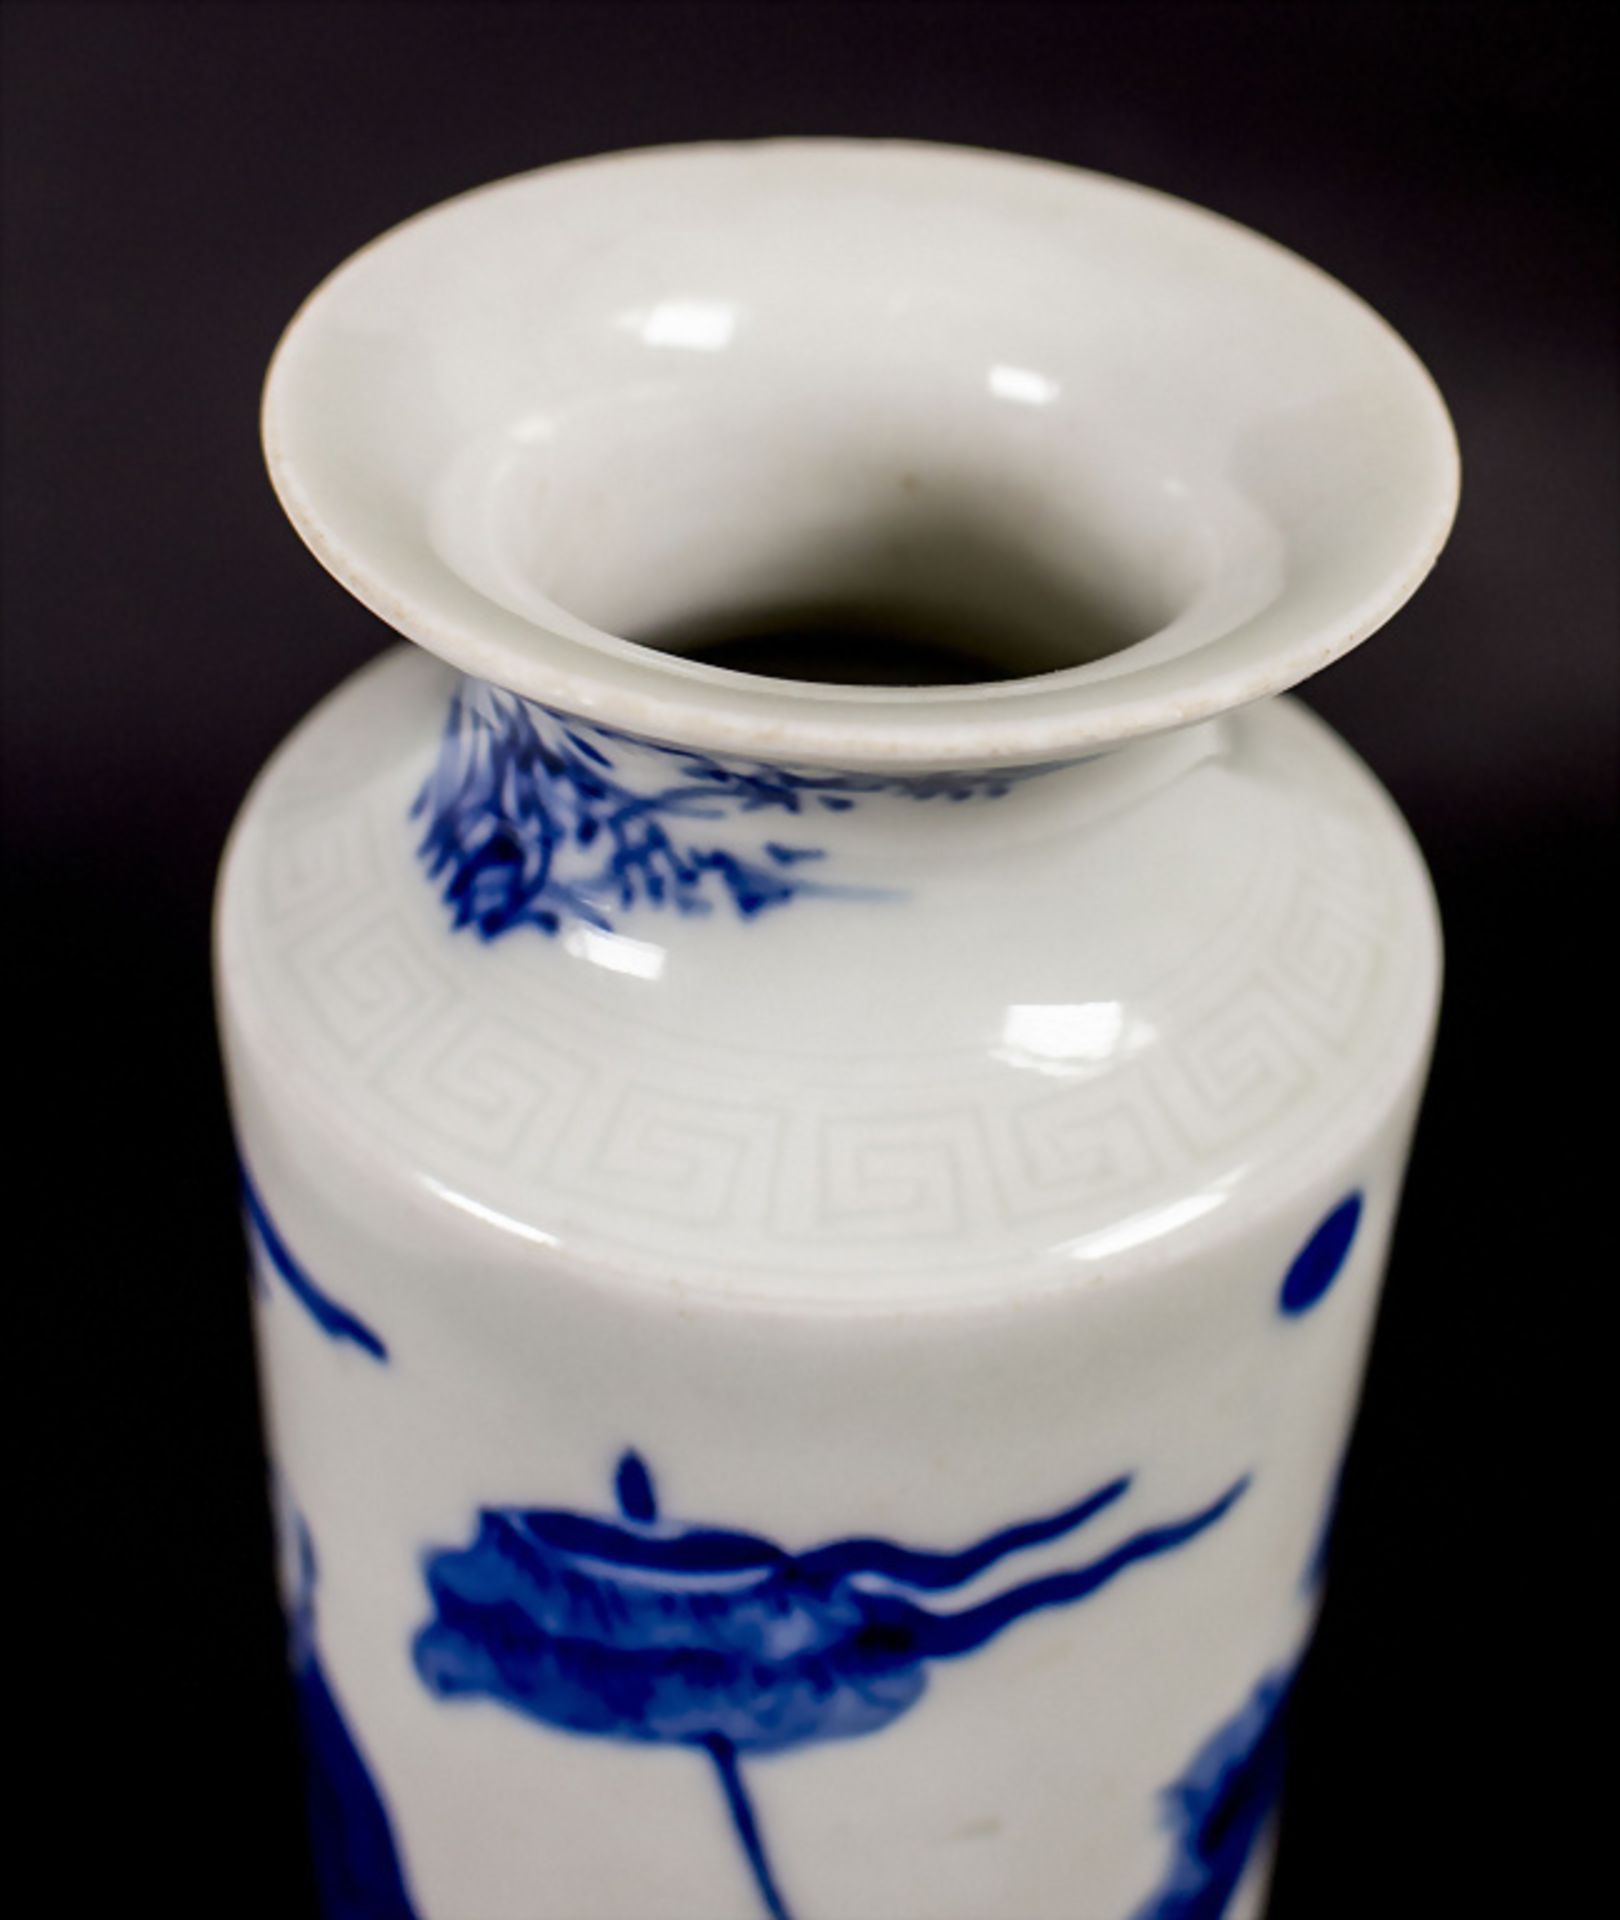 Ziervase / A decorative vase, China, Qing Dynastie (1644-1911) - Bild 6 aus 7